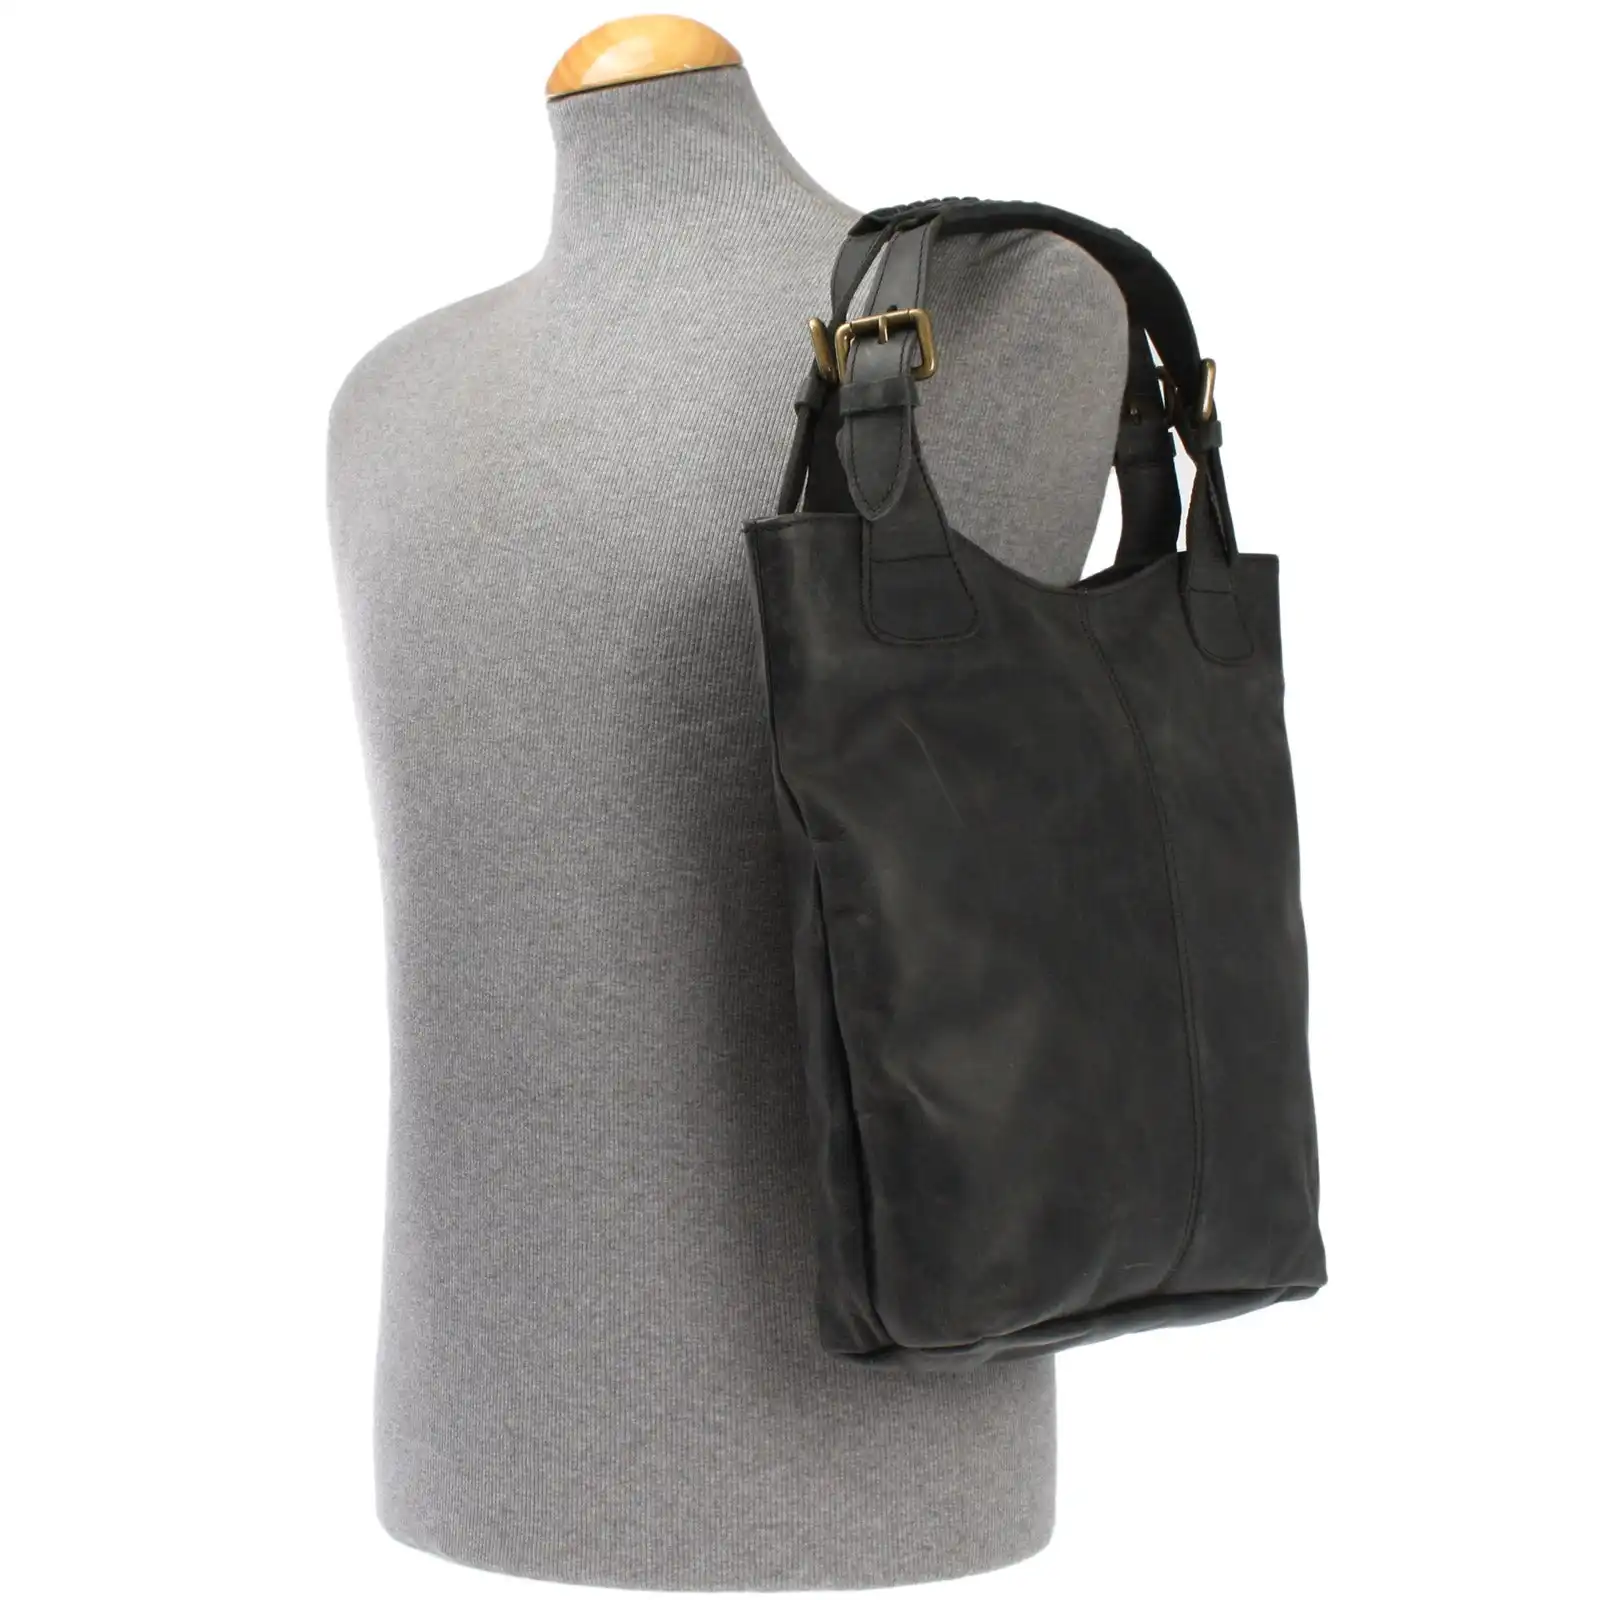 Yüksek kaliteli gri deriden hazırlanmış olan bu PREMIUM kadin çantası, arkada ve içeride fermuarlı bölmelere sahiptir.